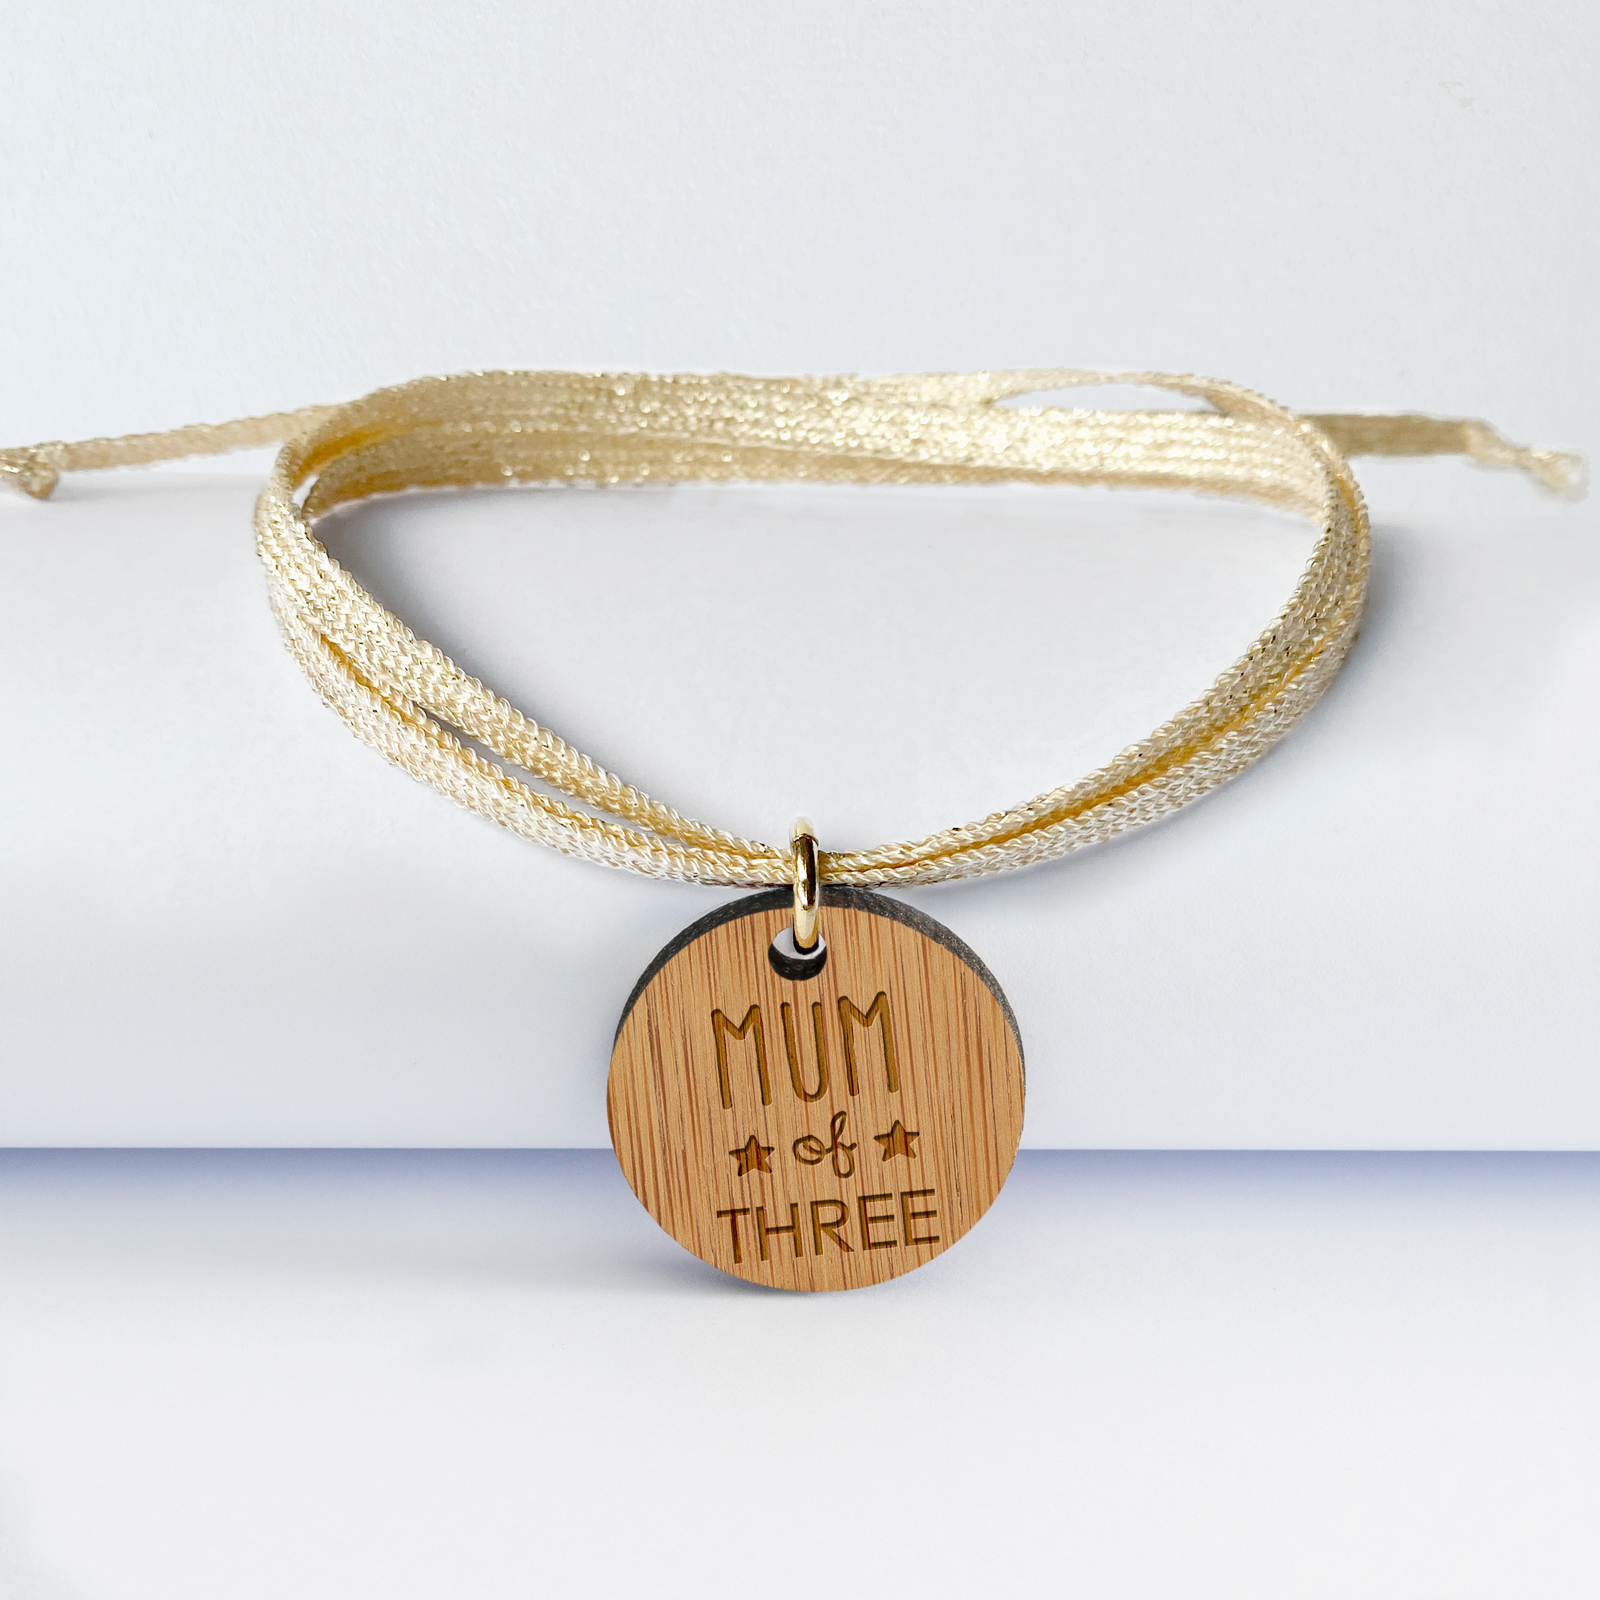 Bracelet 3 tours personnalisé médaille gravée bois dormeuse ronde 20 mm - édition spéciale "Mum of three" 1